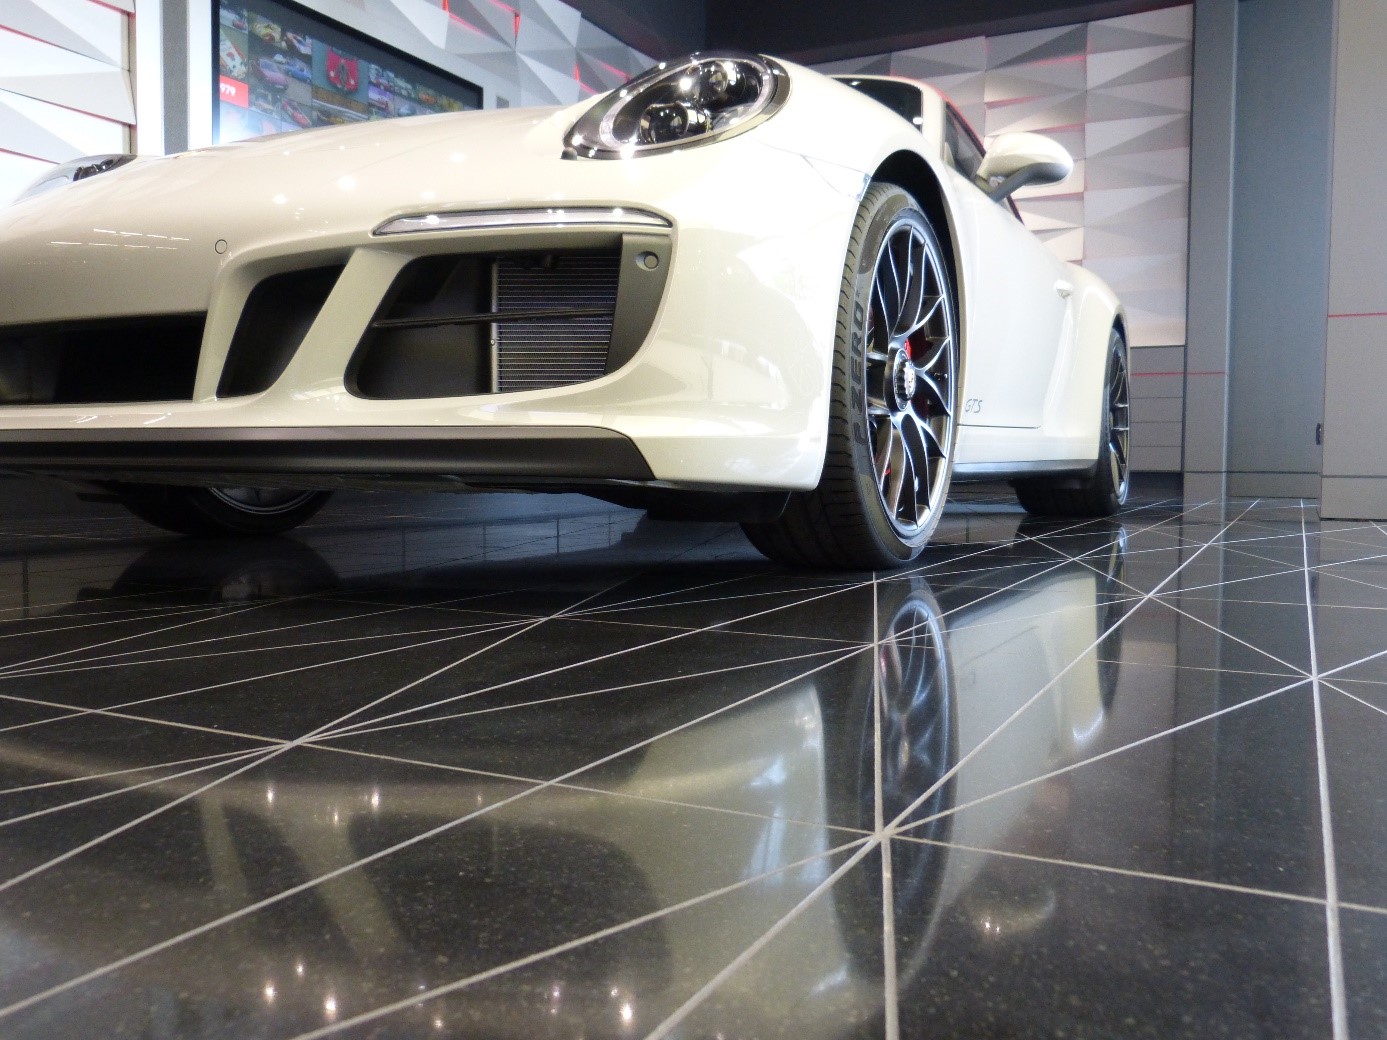 Porsche showroom w Libanie olśniewa pięknymi samochodami i posadzką TechniStone® - Crystal polar white a Taurus Black od Technistone